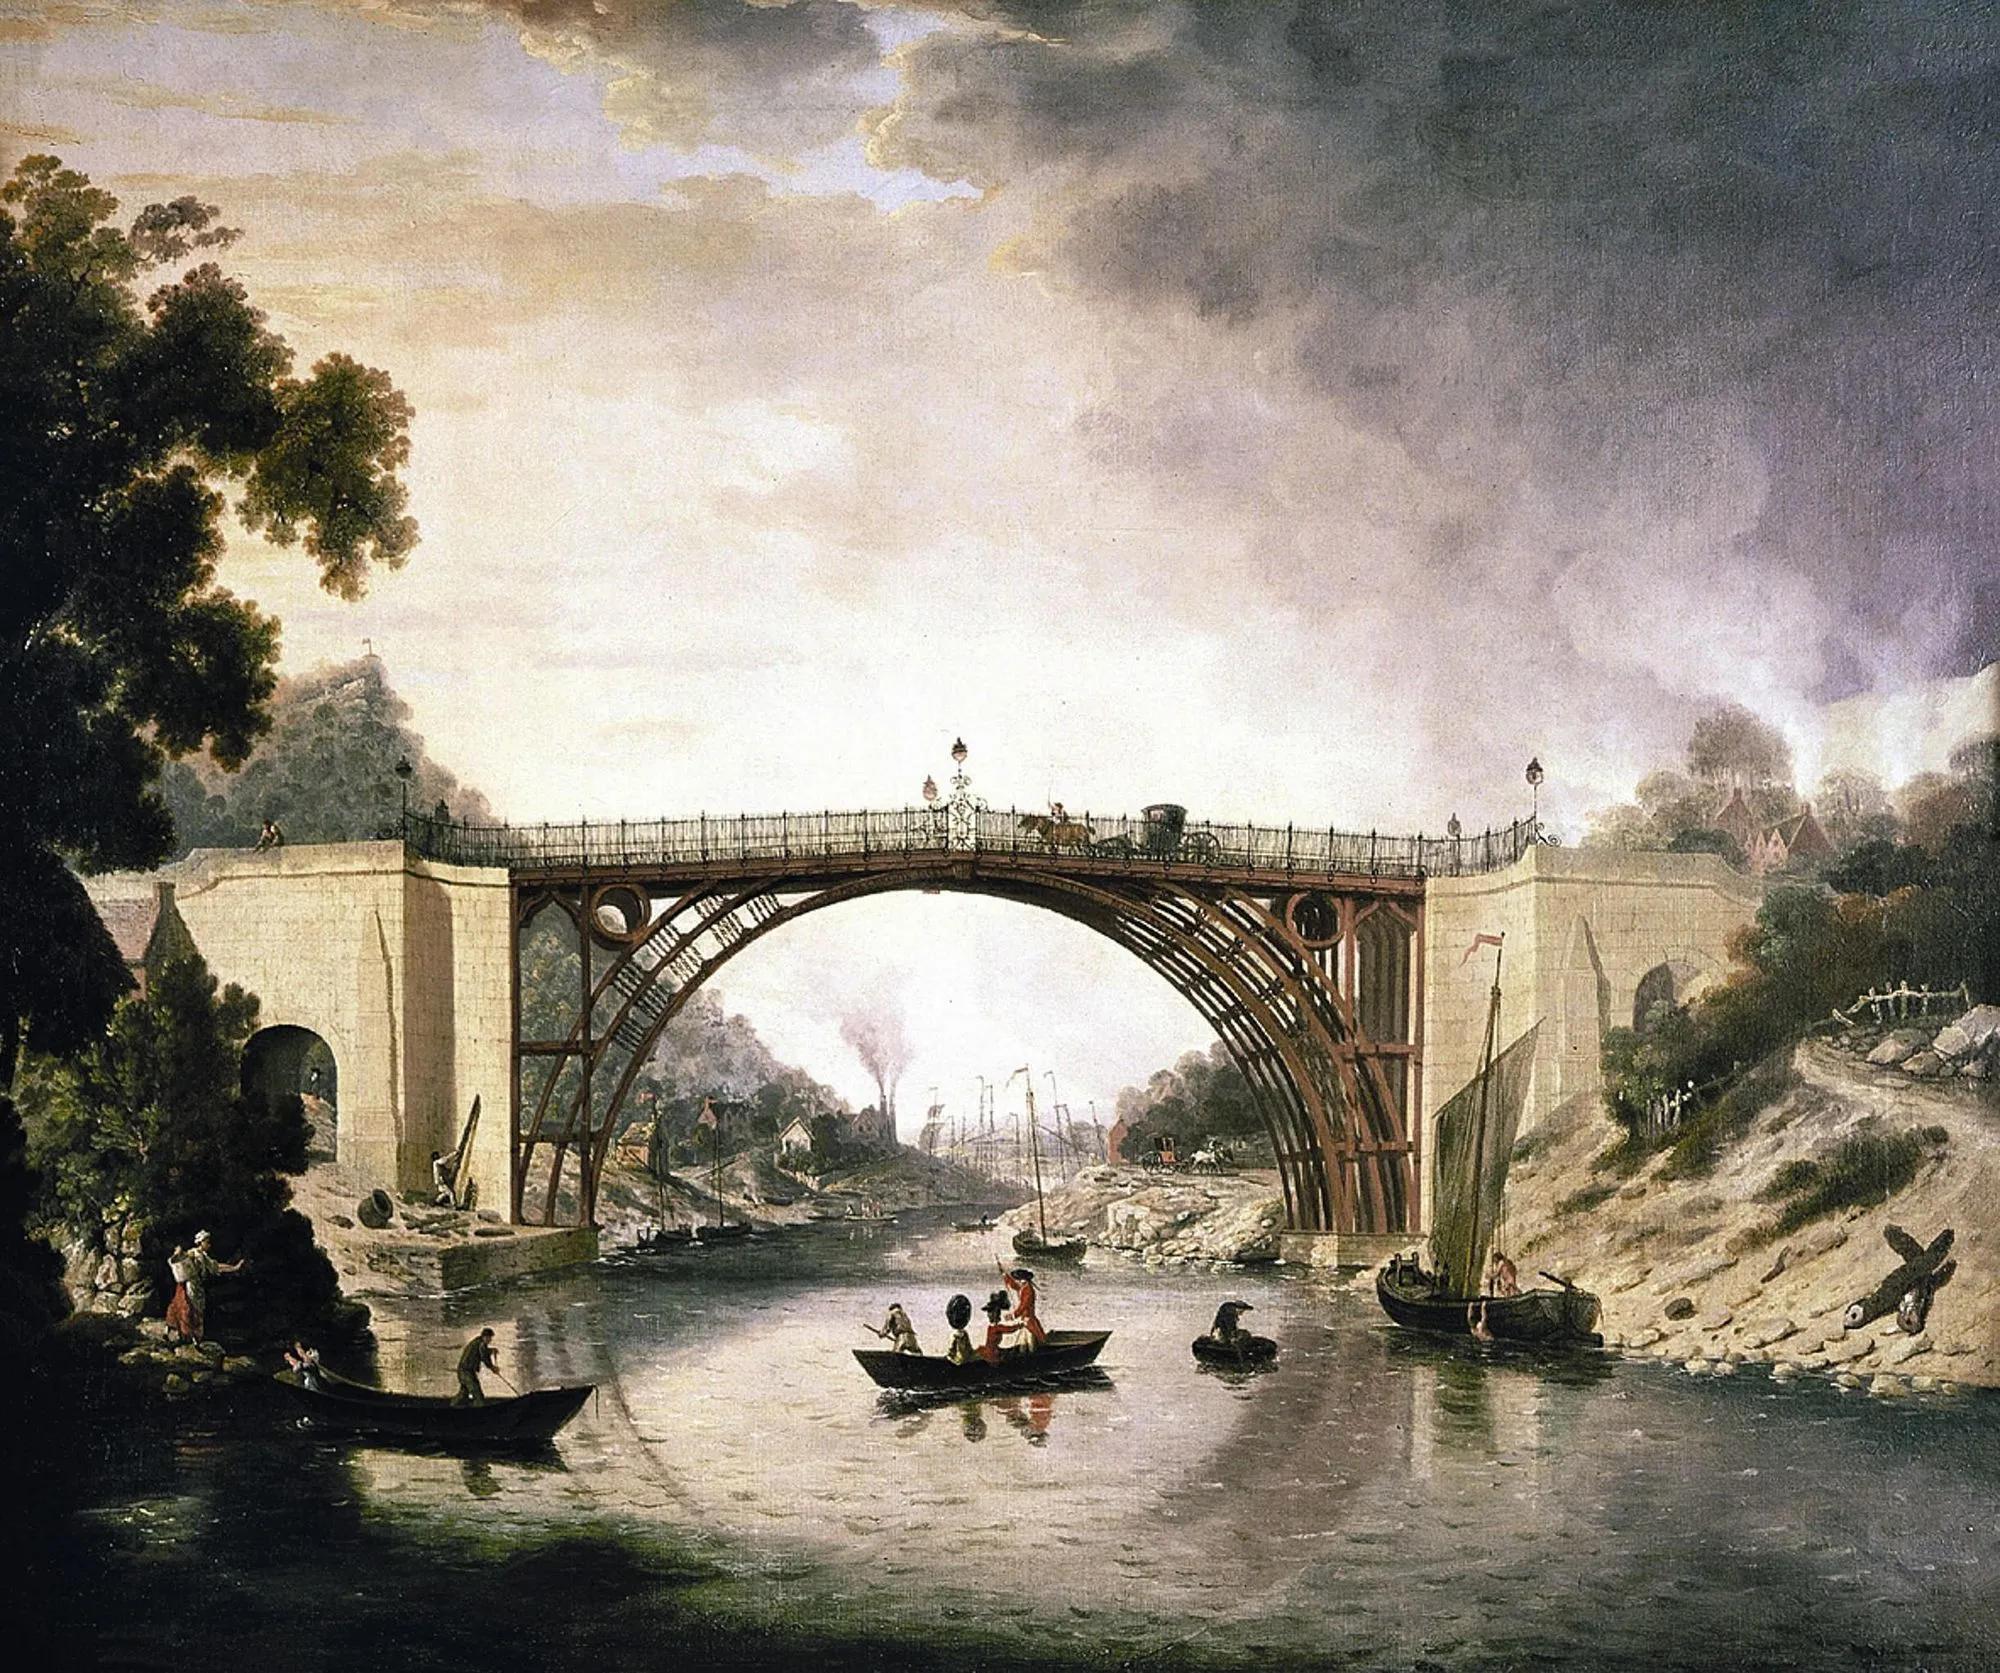 A View Of The Iron Bridge, William Williams, 1777.